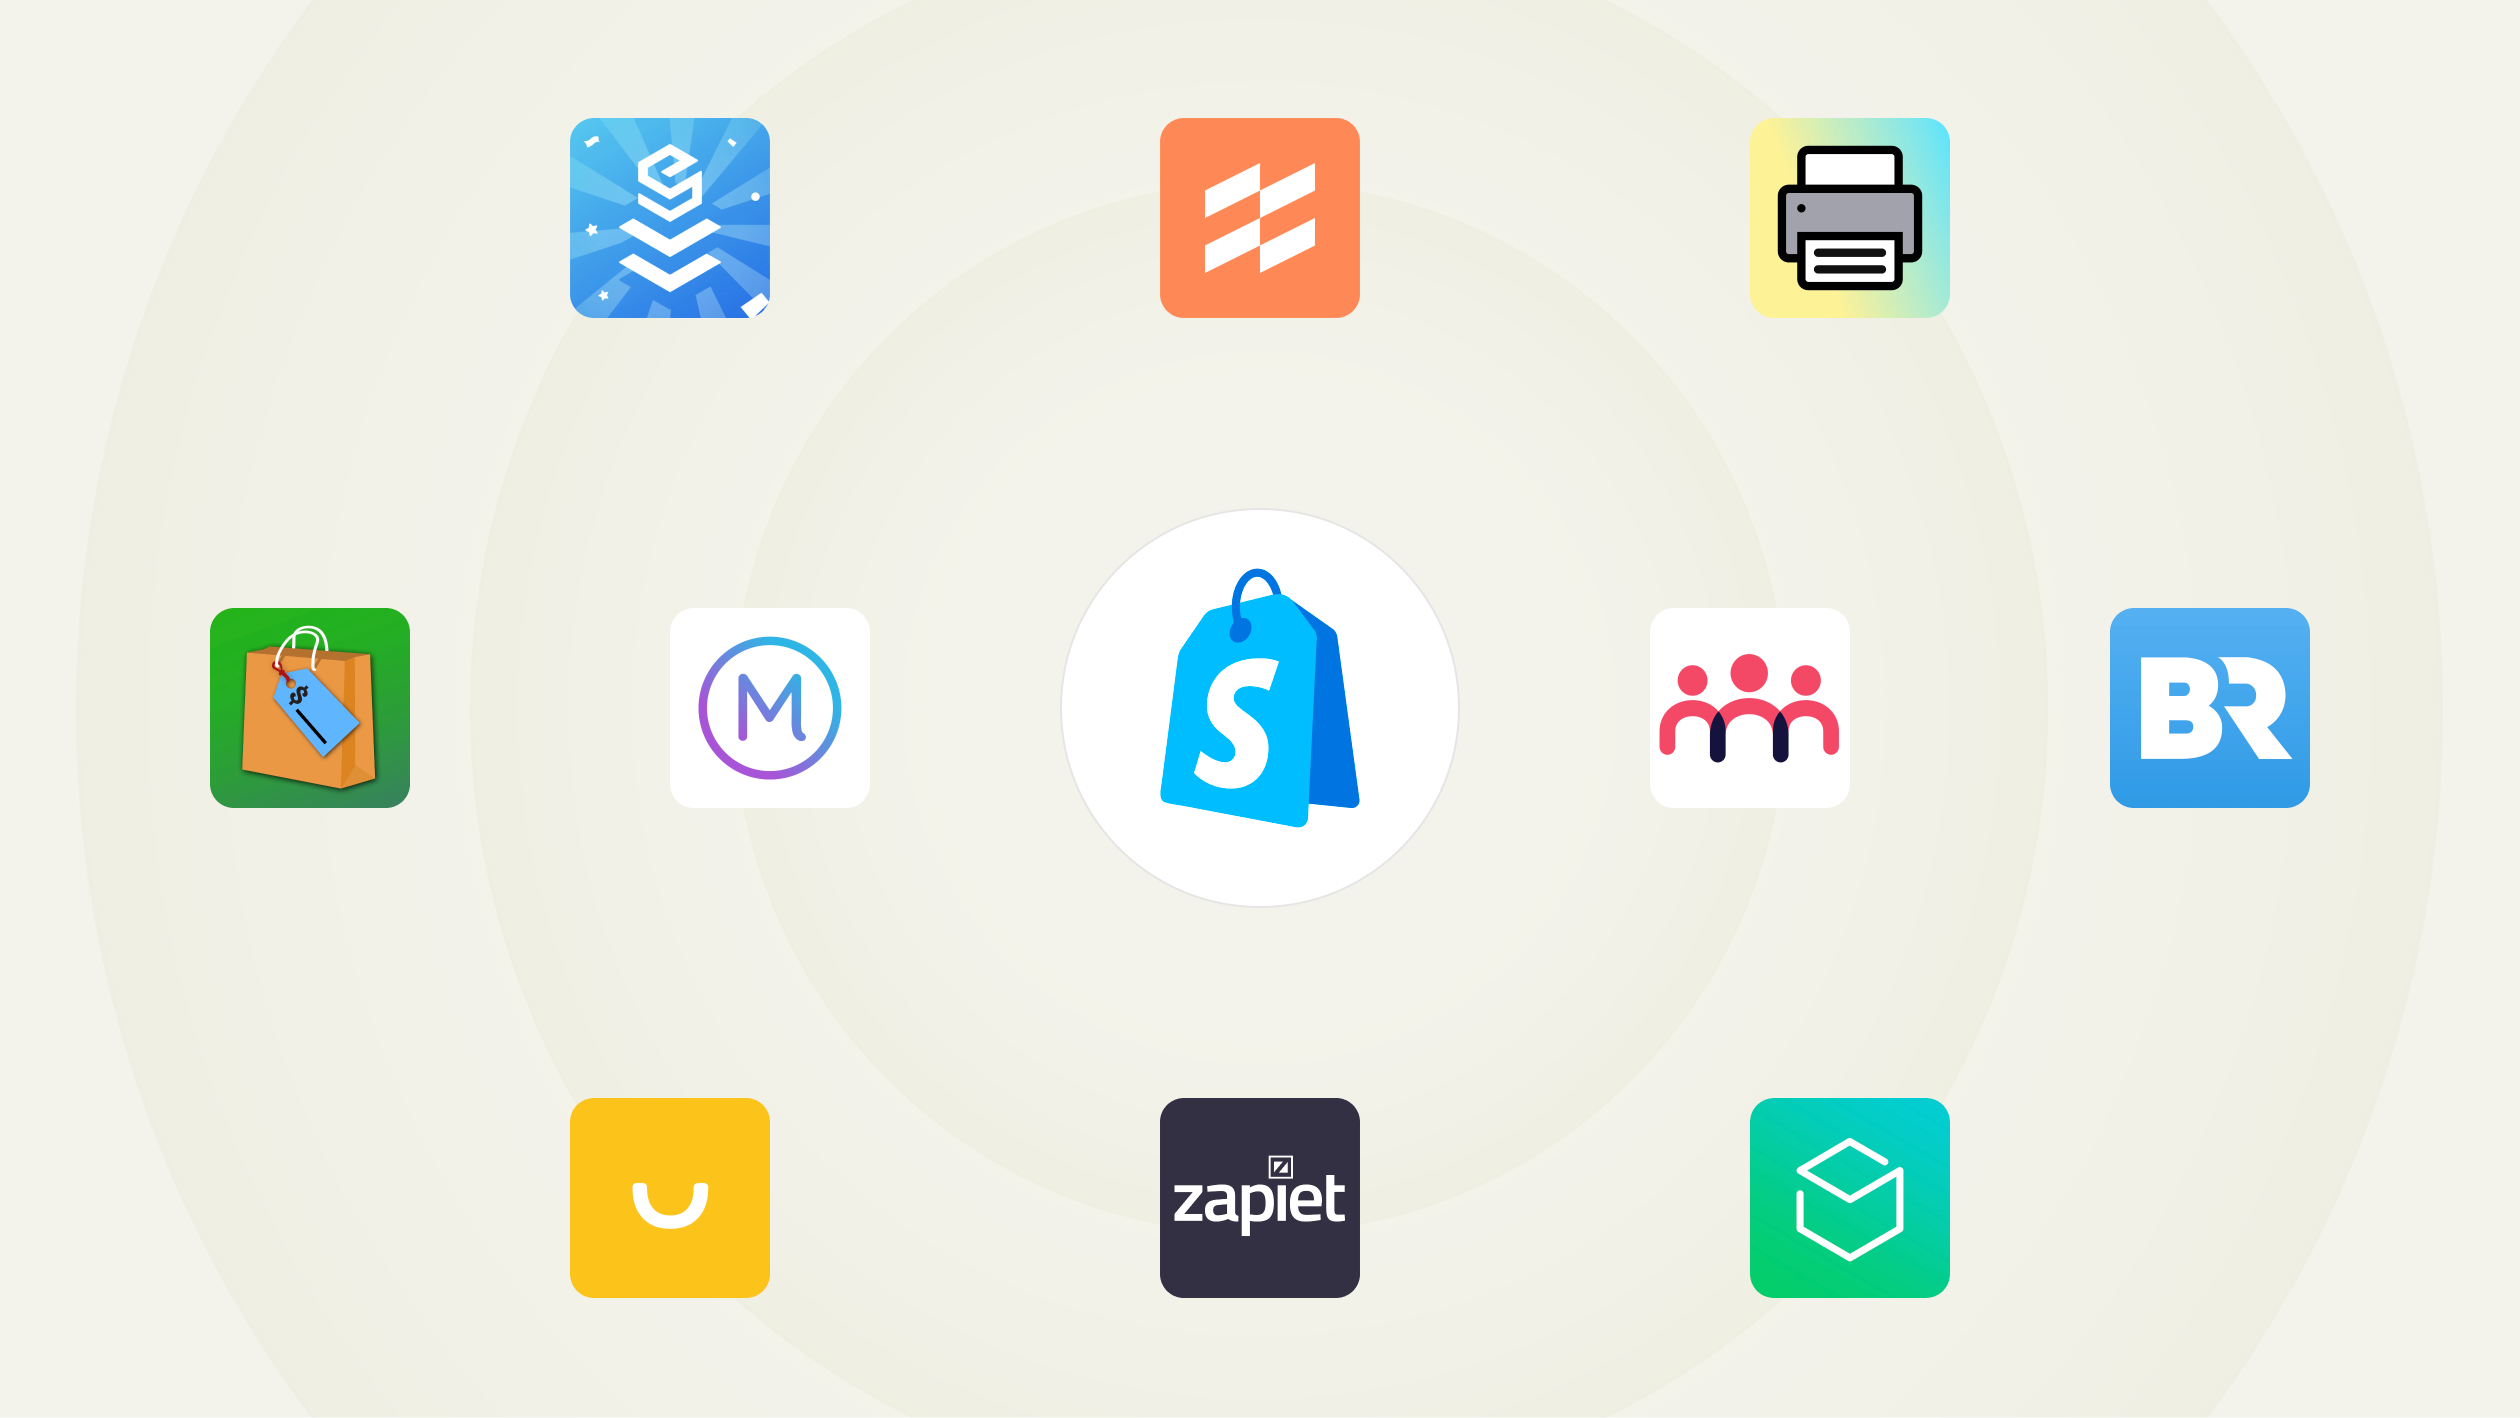 Una raccolta di icone di app. Al centro c’è il logo di Shopify POS e intorno al logo ci sono le icone di app popolari: EasyTeam, Filljoy, Zapiet, Optizio, Stocky, Order Printer, Smile, Better Reports, Marsello ed Endear.